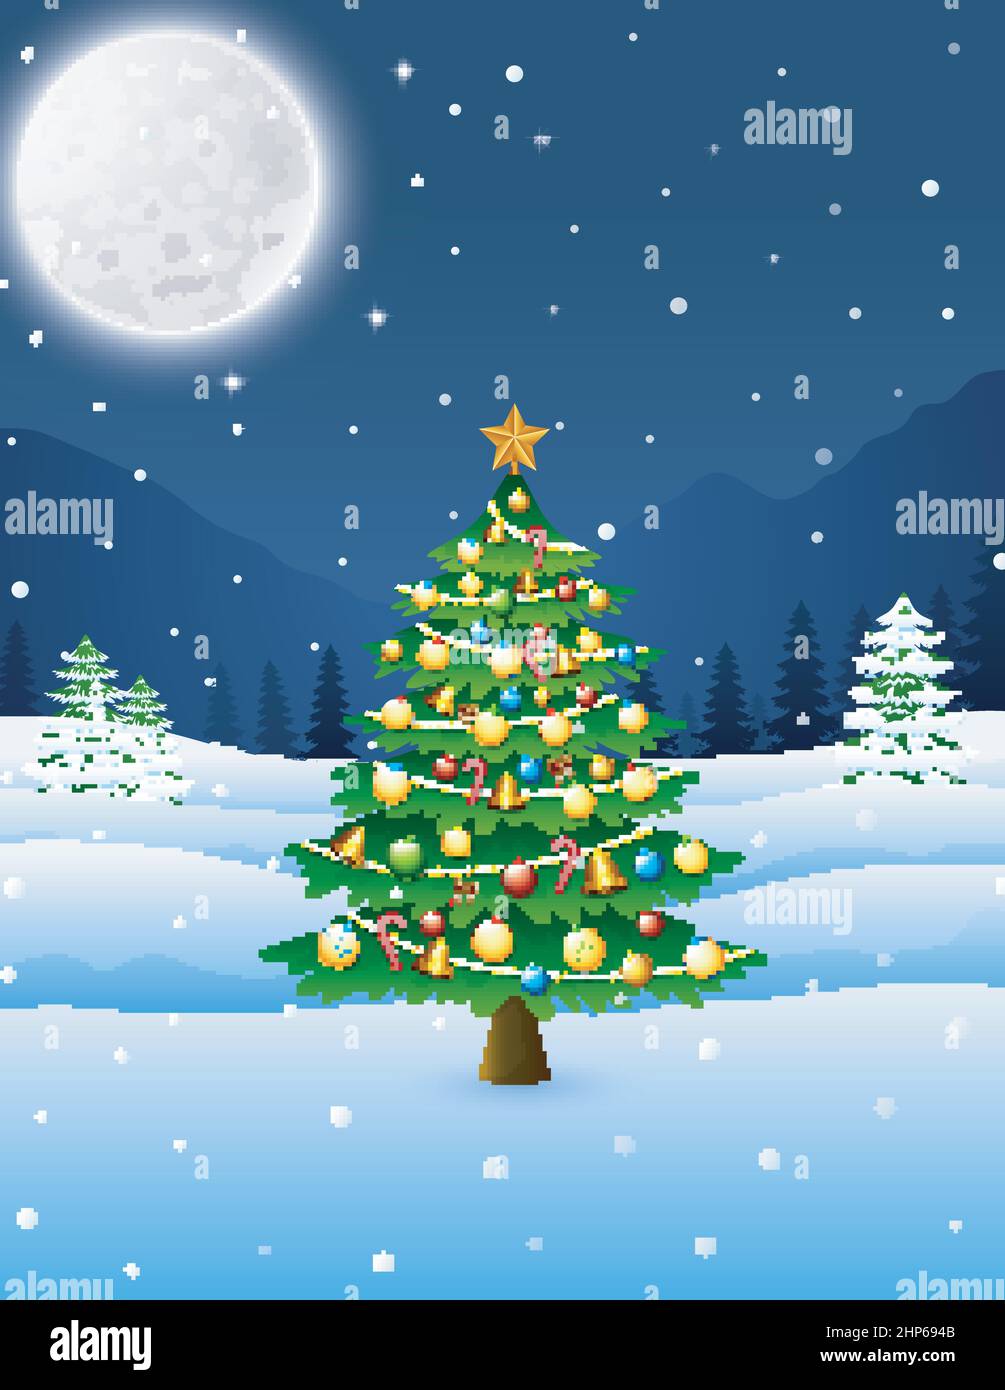 Albero di Natale nel paesaggio invernale notturno Illustrazione Vettoriale